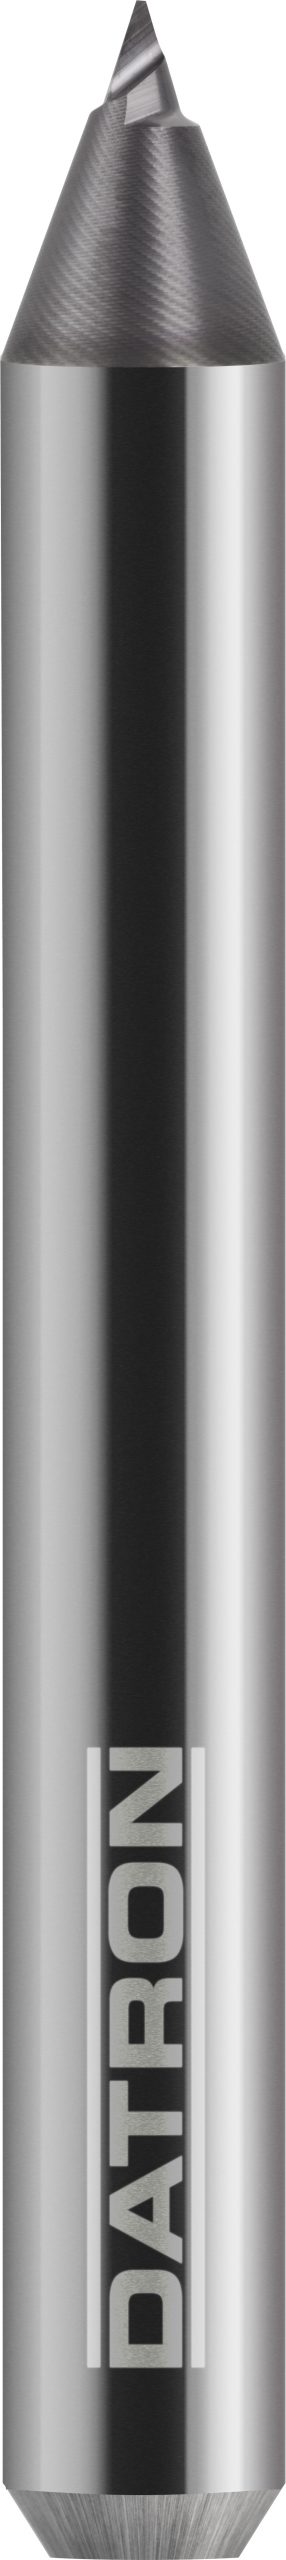 DATRON Single Flute Standard Engraving Tool - Hard-Metal Machining